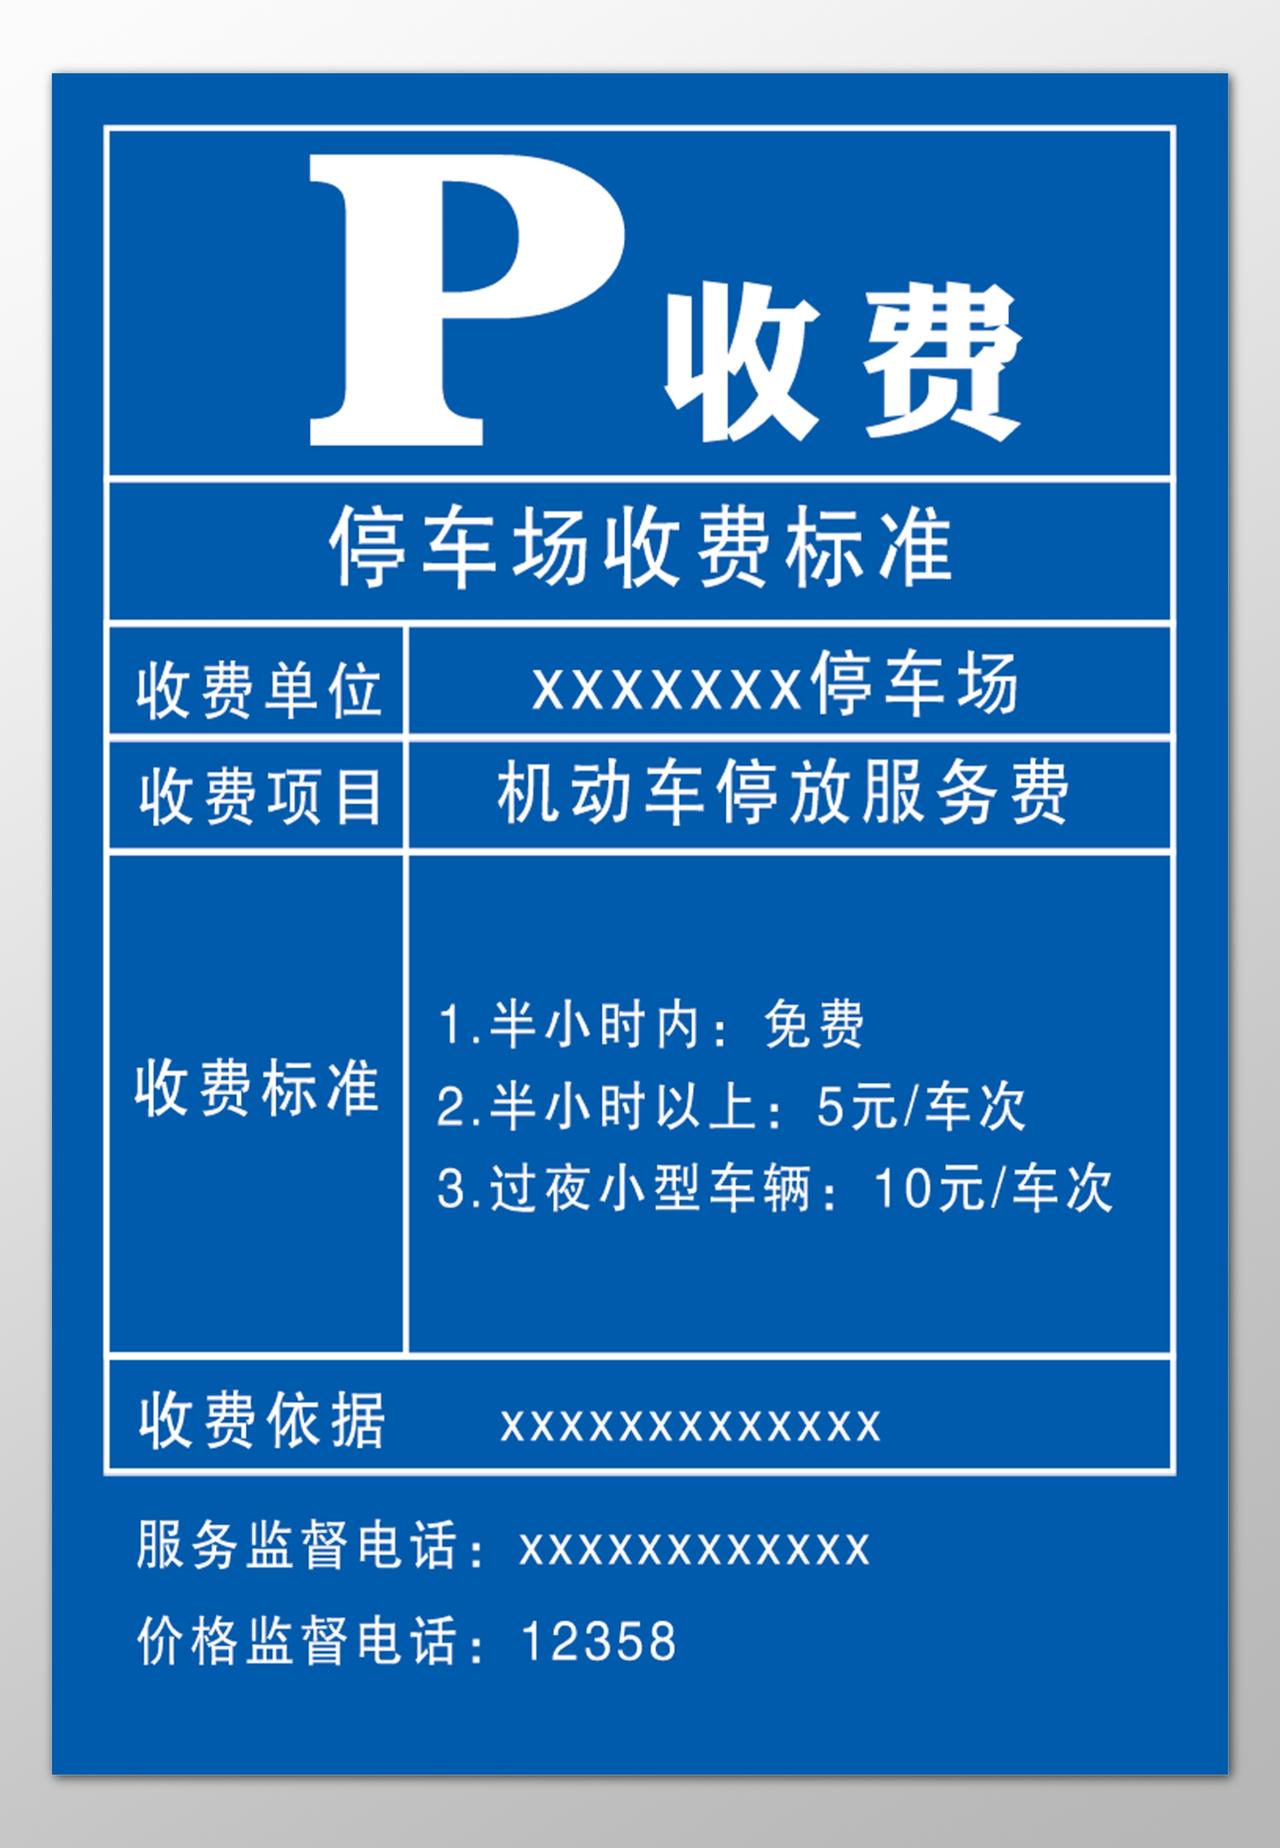 停车场收费标准收费单位项目公示牌